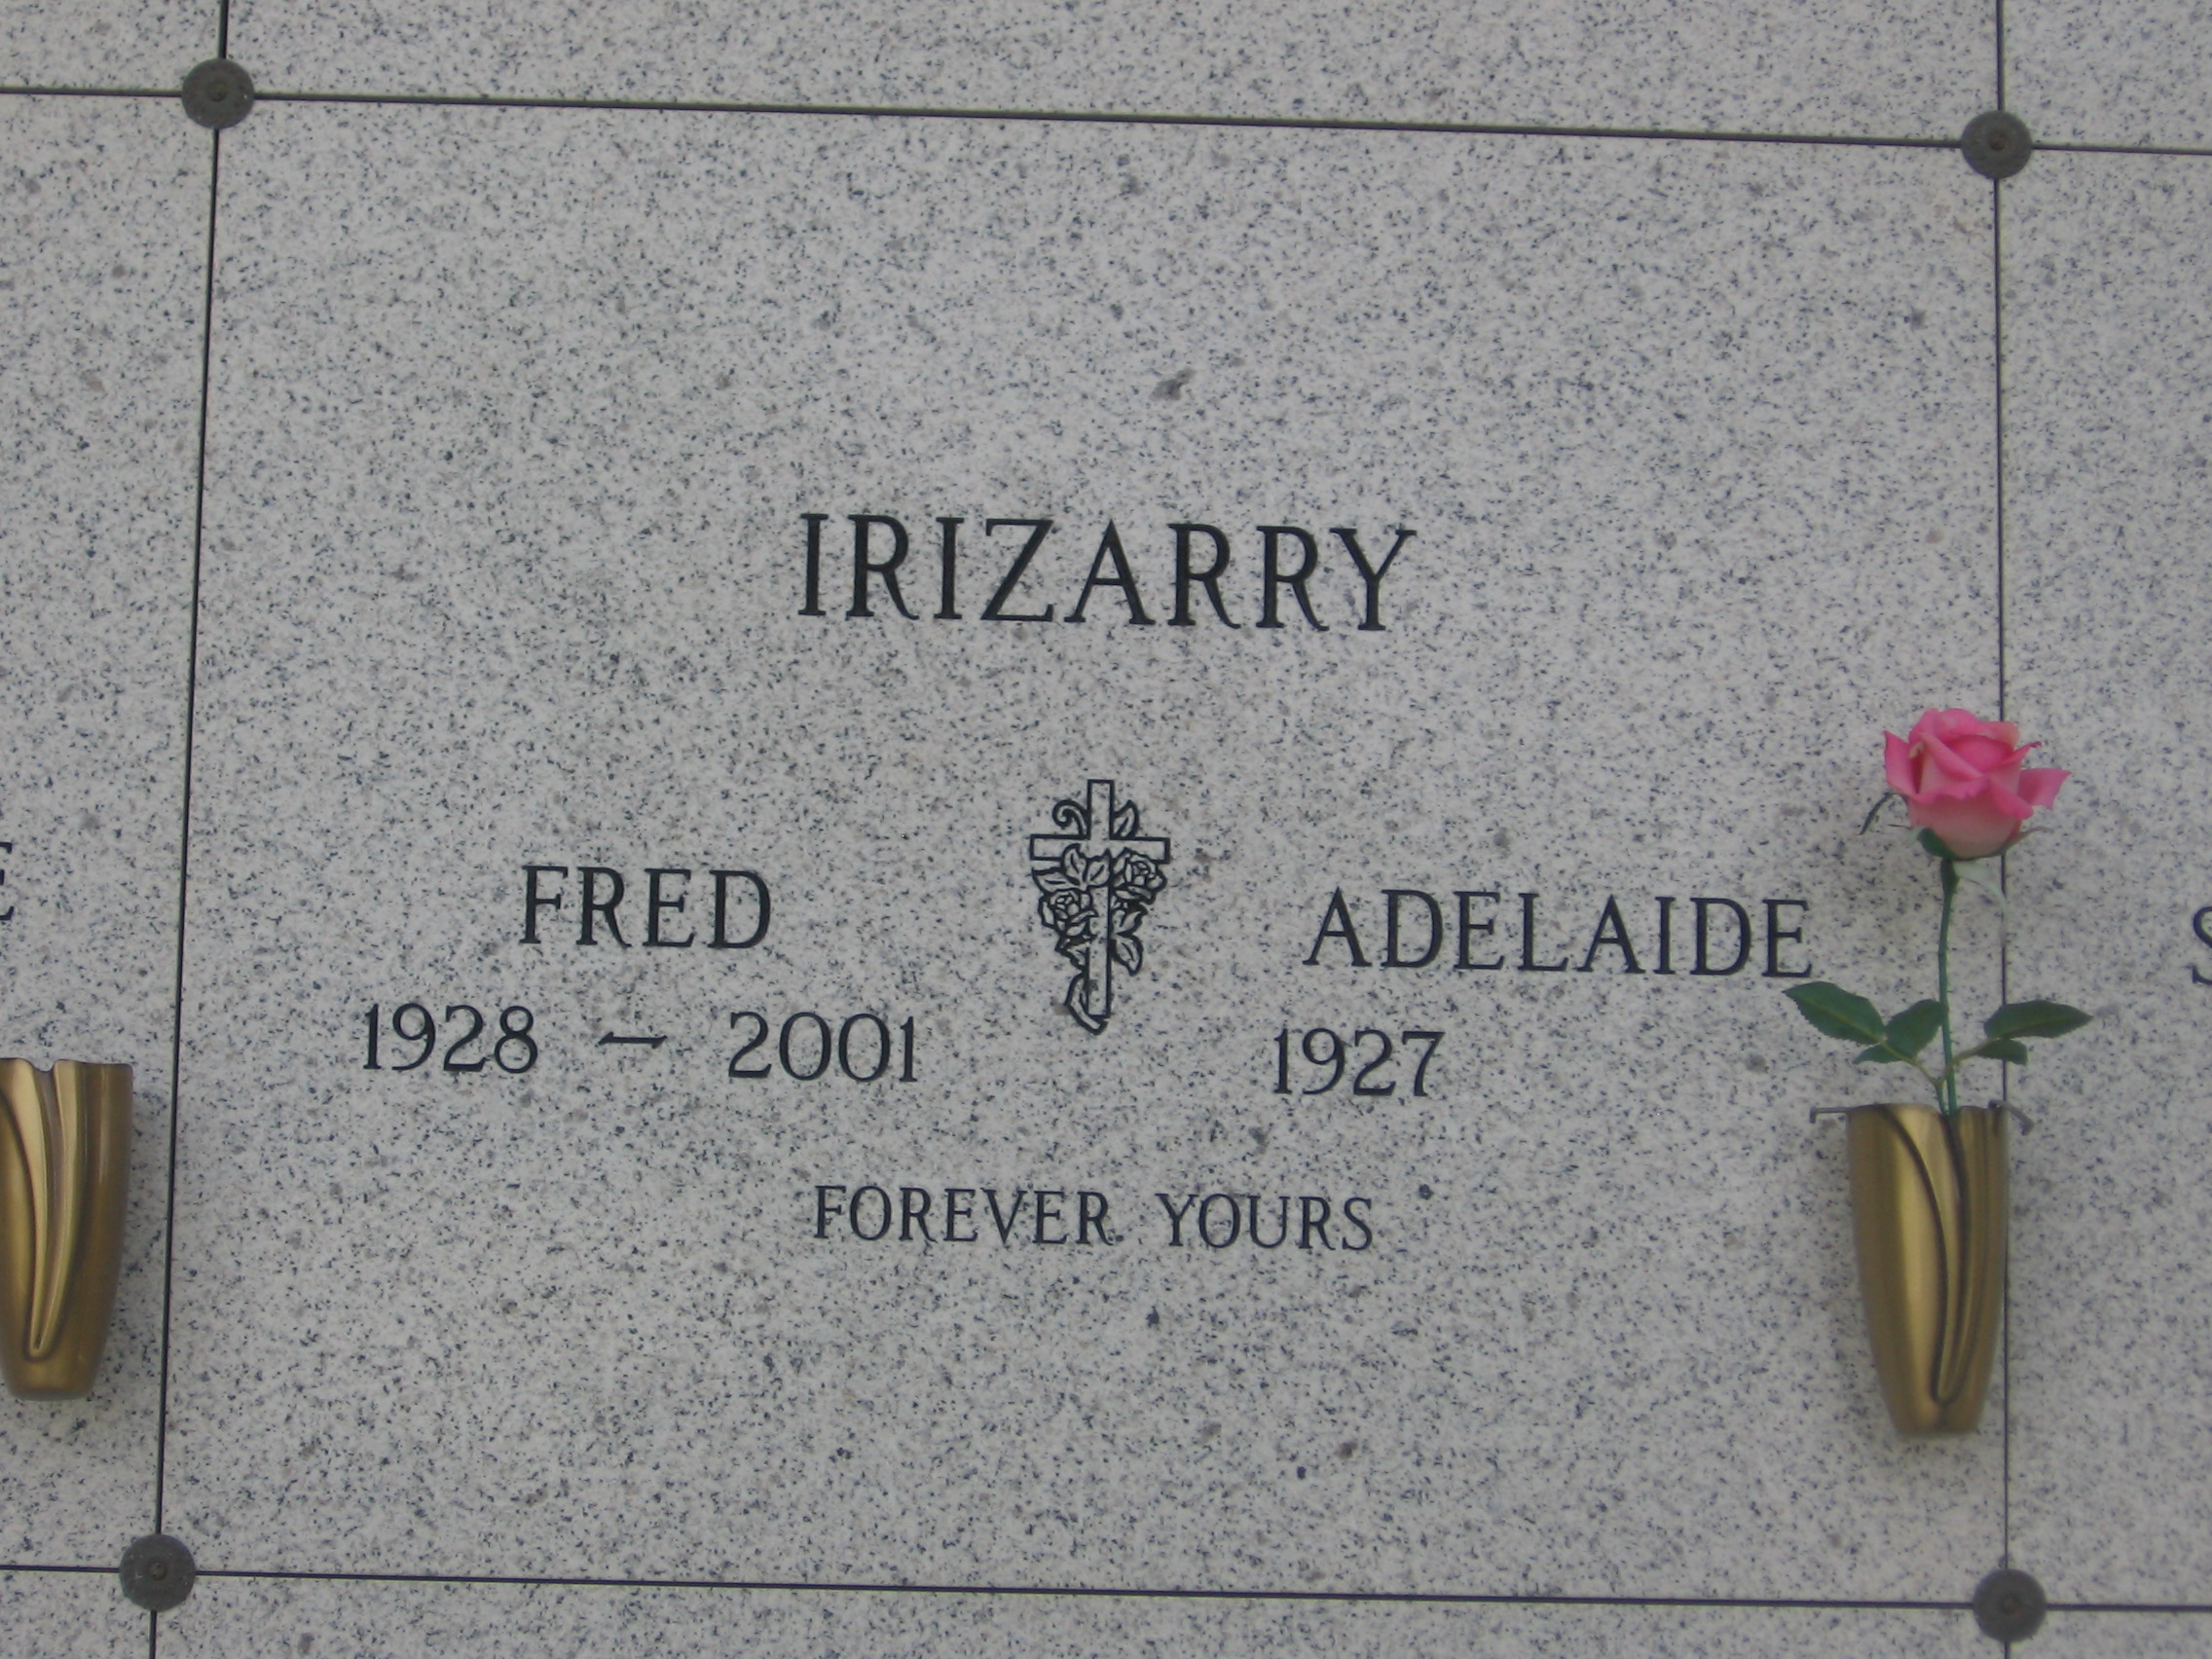 Adelaide Irizarry